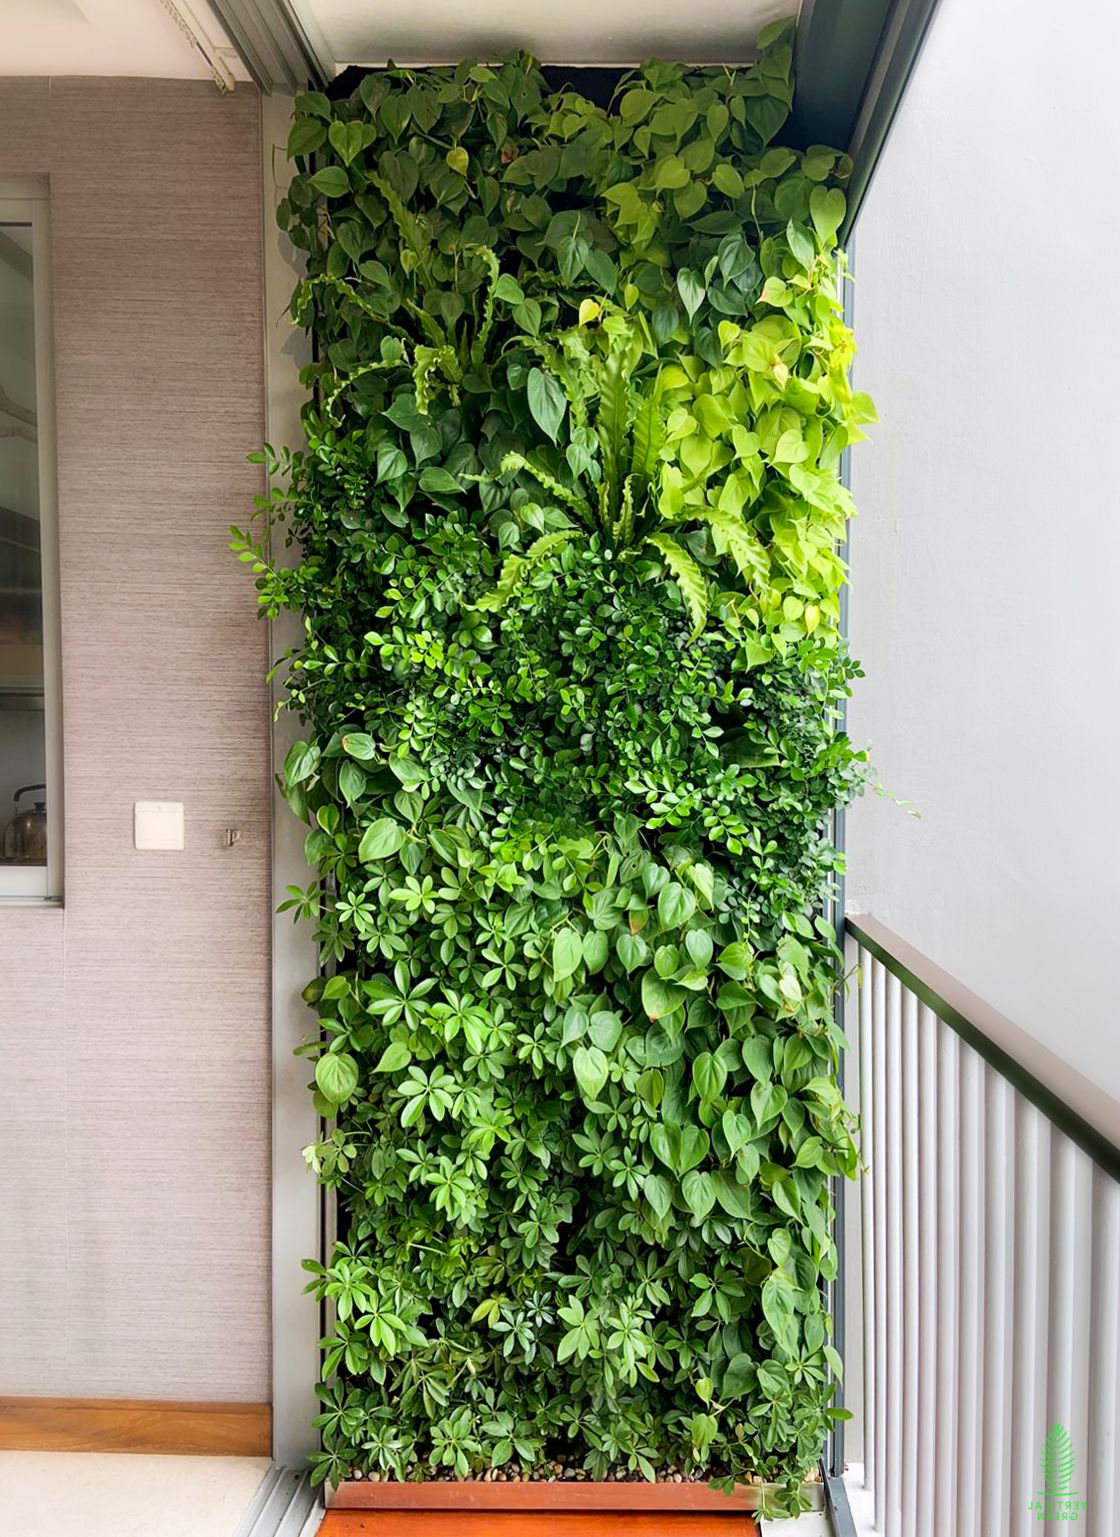 Mur végétal sur le balcon.